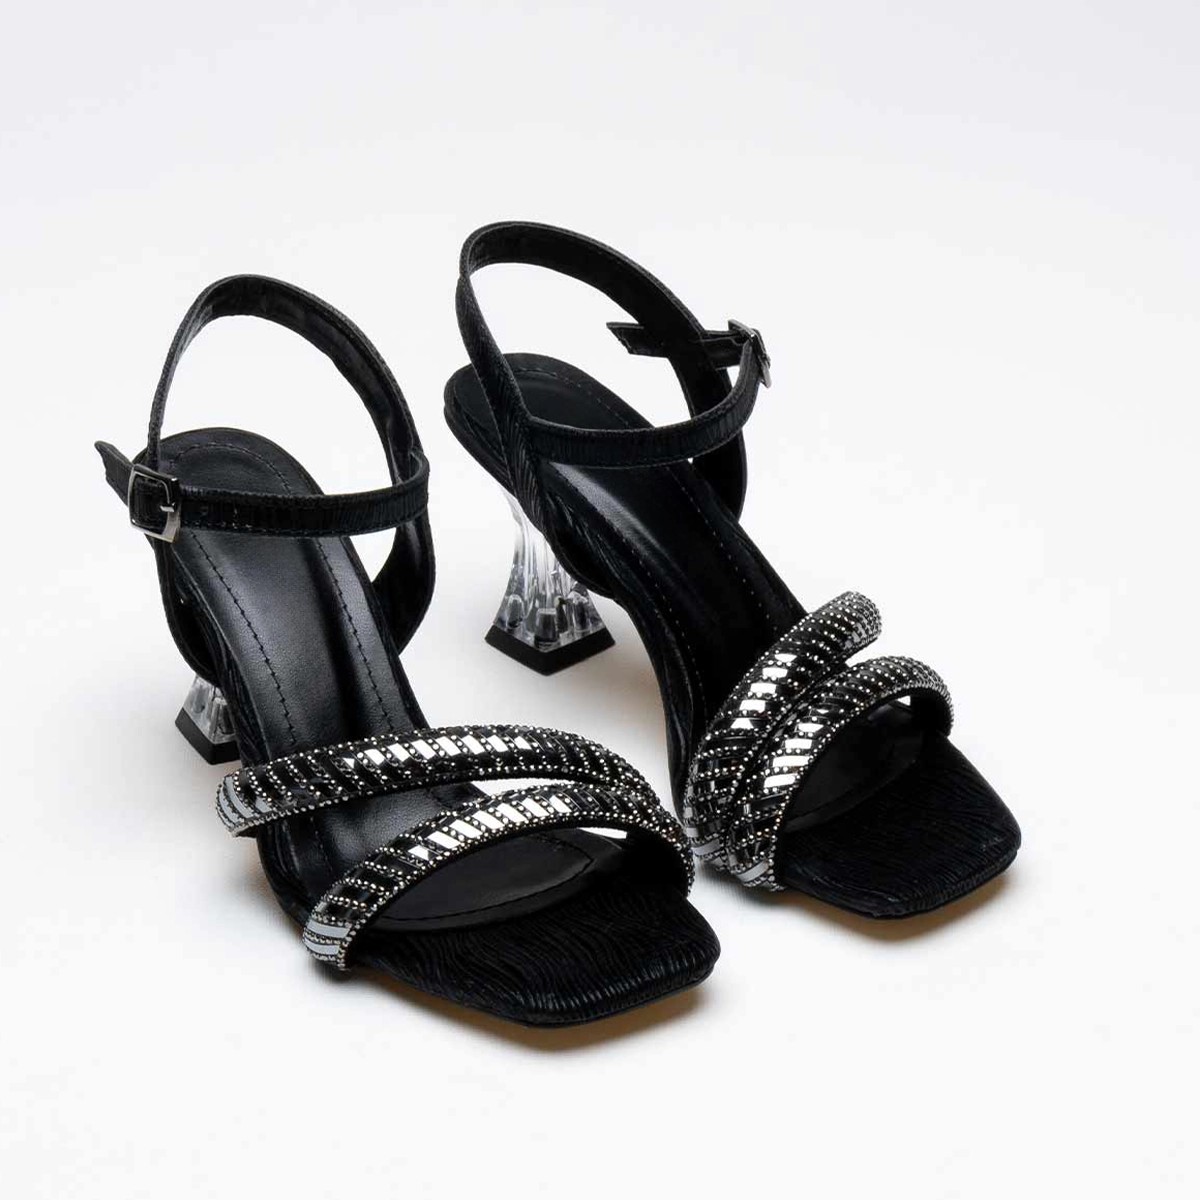 Tekstil Taşlı İnce Topuklu Ayakkabı - Siyah